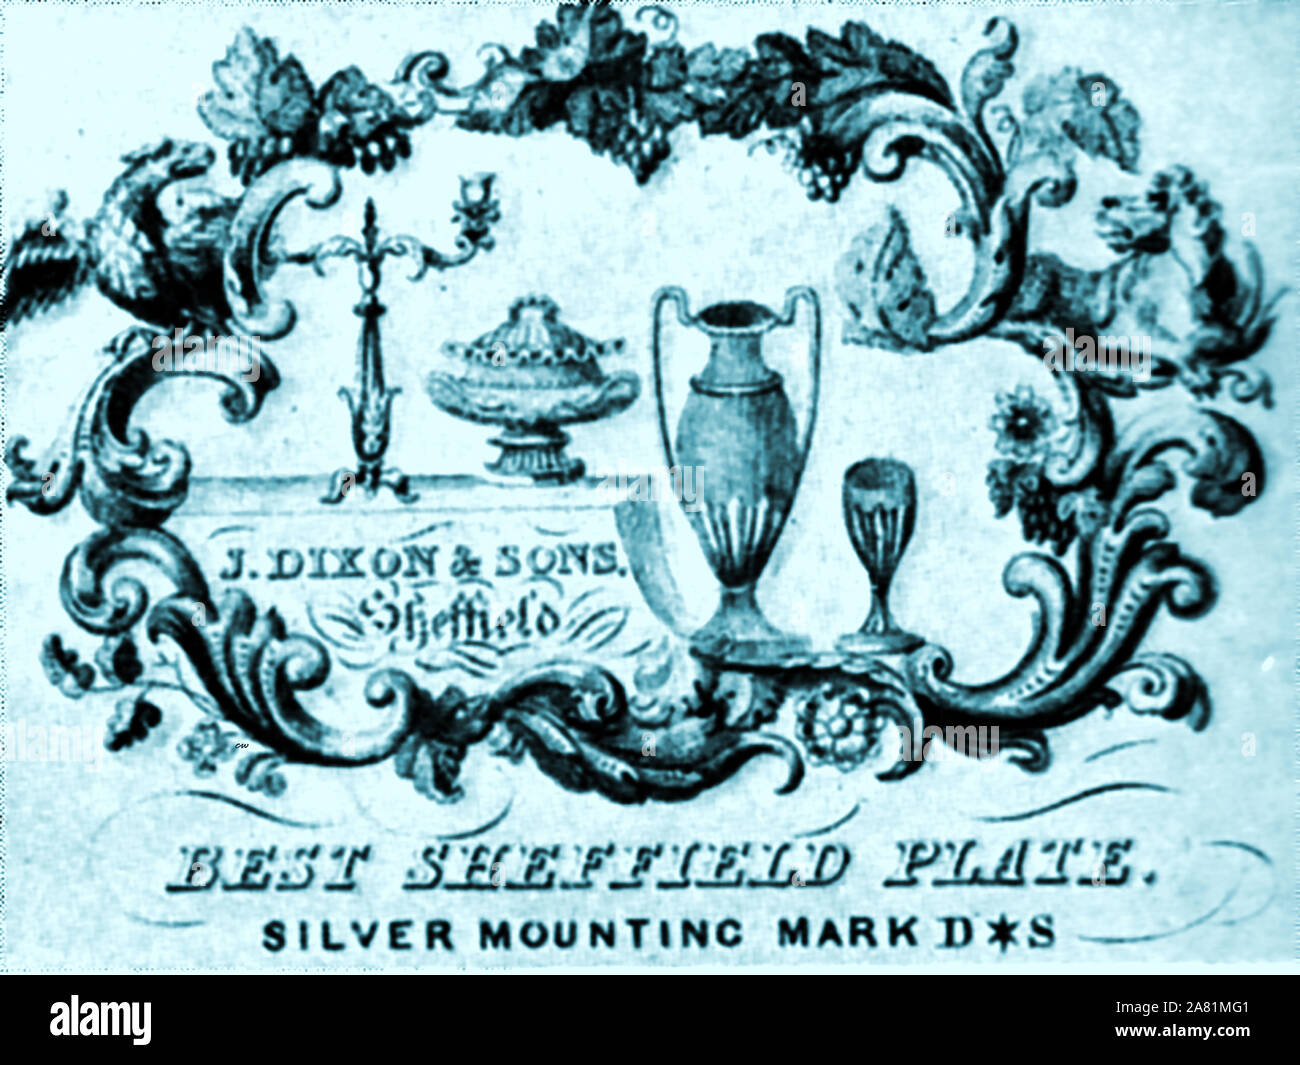 Argento Sheffield industria - piastra di marcatore di J Dixon & Sons. Uno dei loro primi marchi è stata una tromba con un banner appeso. Esse sono state fondate nel 1806 in Sheffield e divenne uno dei maggiori produttori britannici nella rivoluzione industriale del XIX secolo. Essi sono anche ben noti come produttori di Pewter ware. Foto Stock